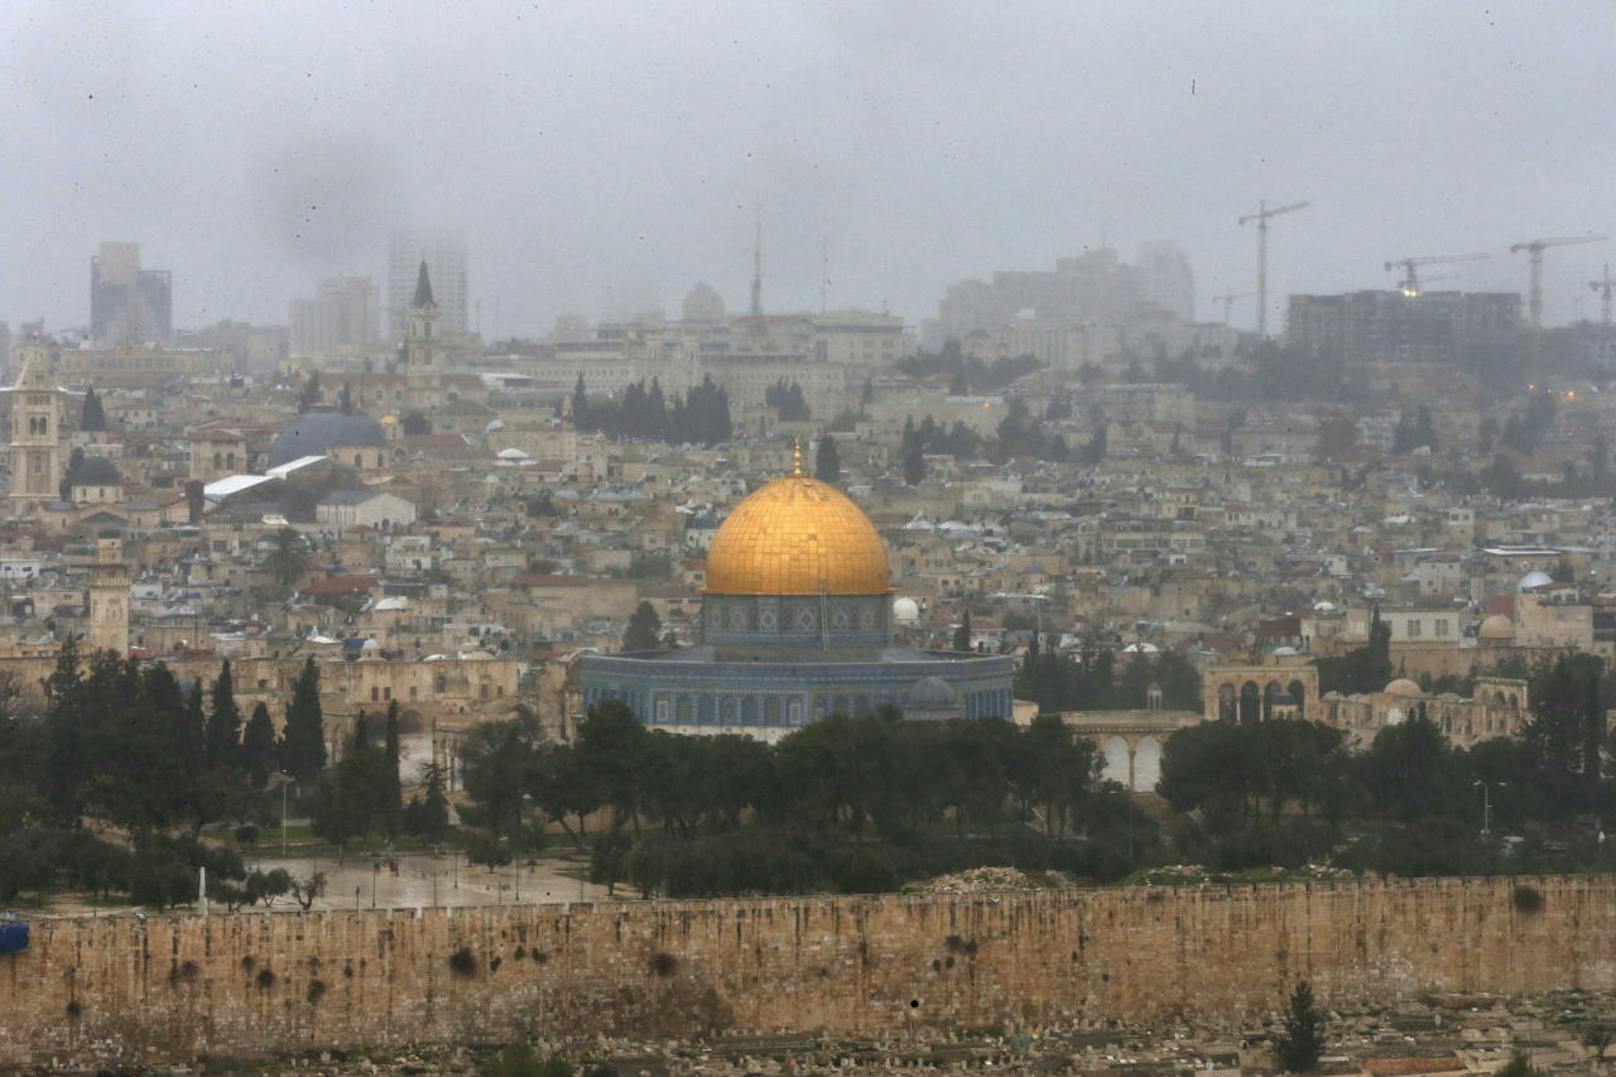 Der Tempelberg in der Altstadt Jerusalems. Sowohl für das Judentum als auch für den Islam ein bedeutendes Heiligtum.